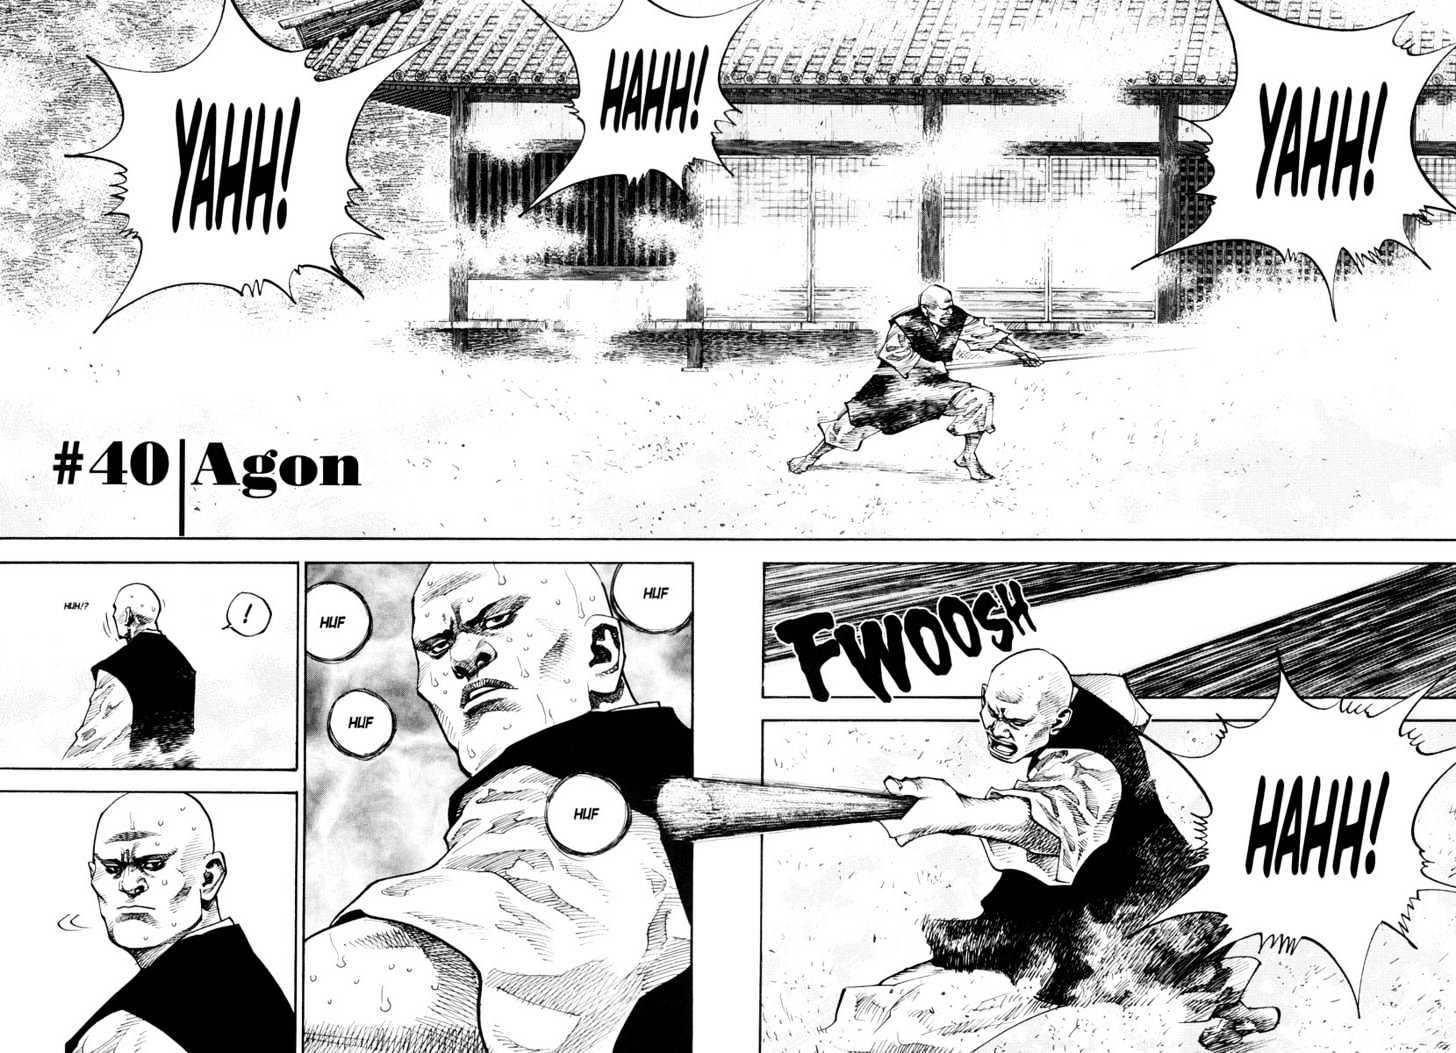 Vagabond Vol.4 Chapter 40 : Agon page 4 - Mangakakalot